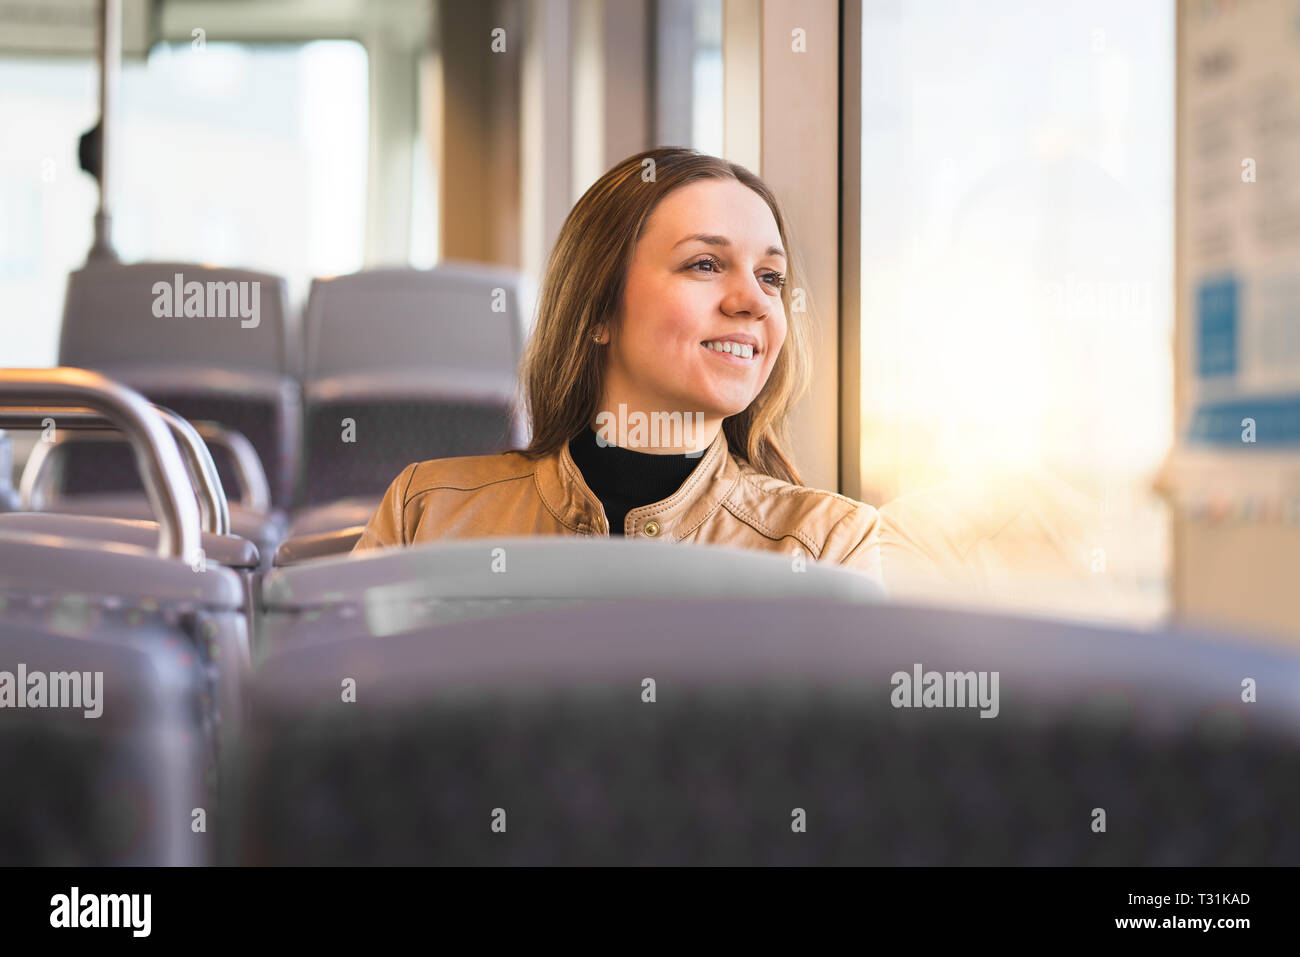 Buona signora che guarda fuori la finestra in autobus, treno, tram o metropolitana. Donna sorridente che guida i mezzi di trasporto pubblici sulla sua strada per il lavoro o la vacanza. Foto Stock